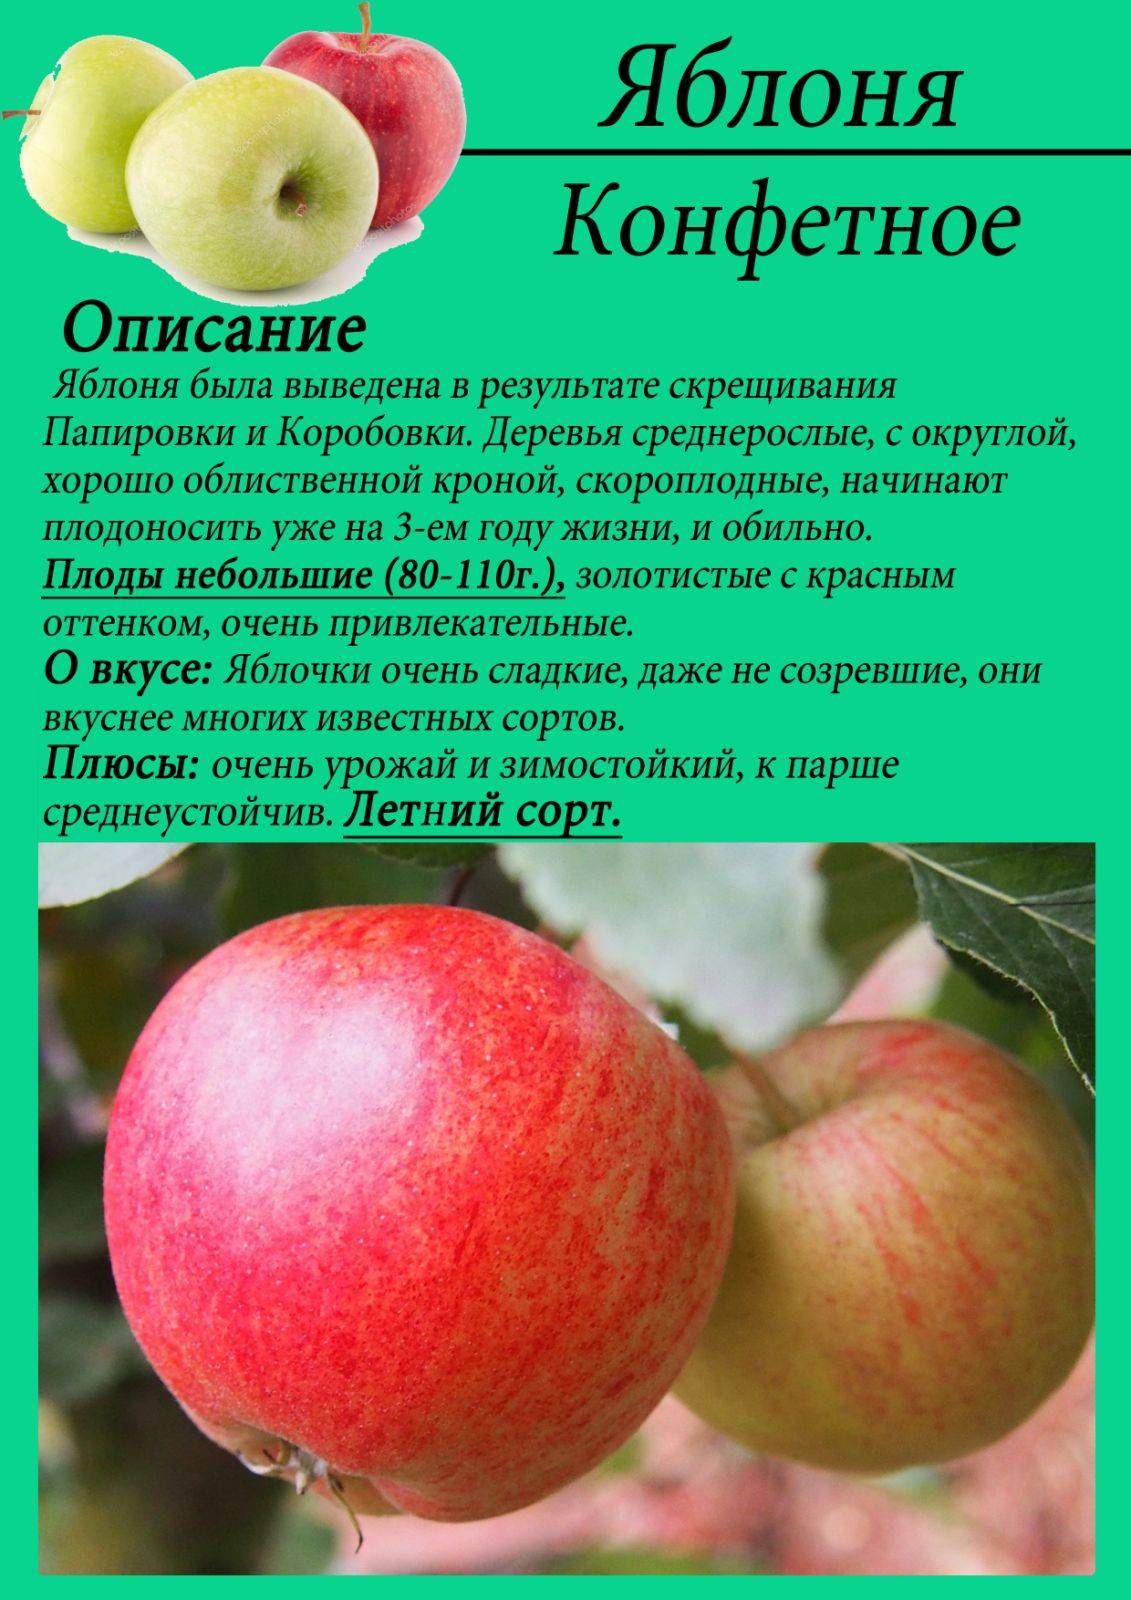 О яблоне коробовка: описание сорта, характеристики, агротехника, выращивание